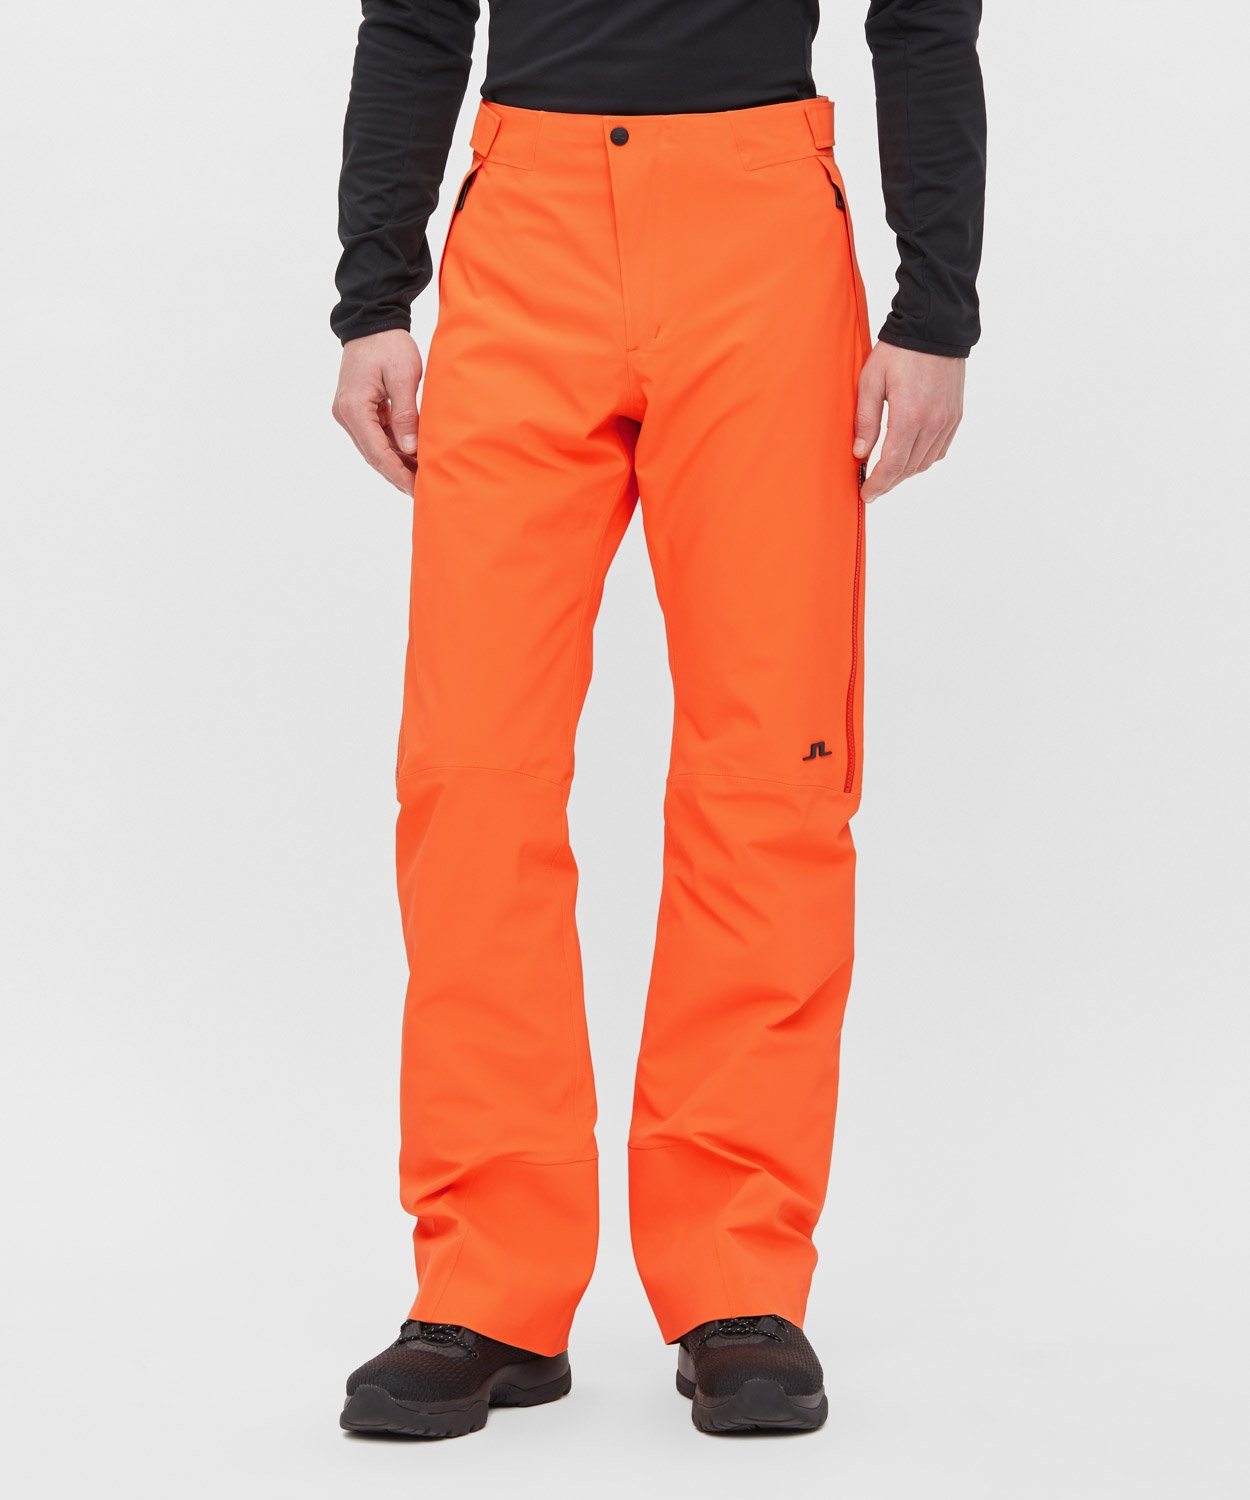 Mens Rick Ski Pant Ski Pants J.Lindeberg Juicy Orange M 